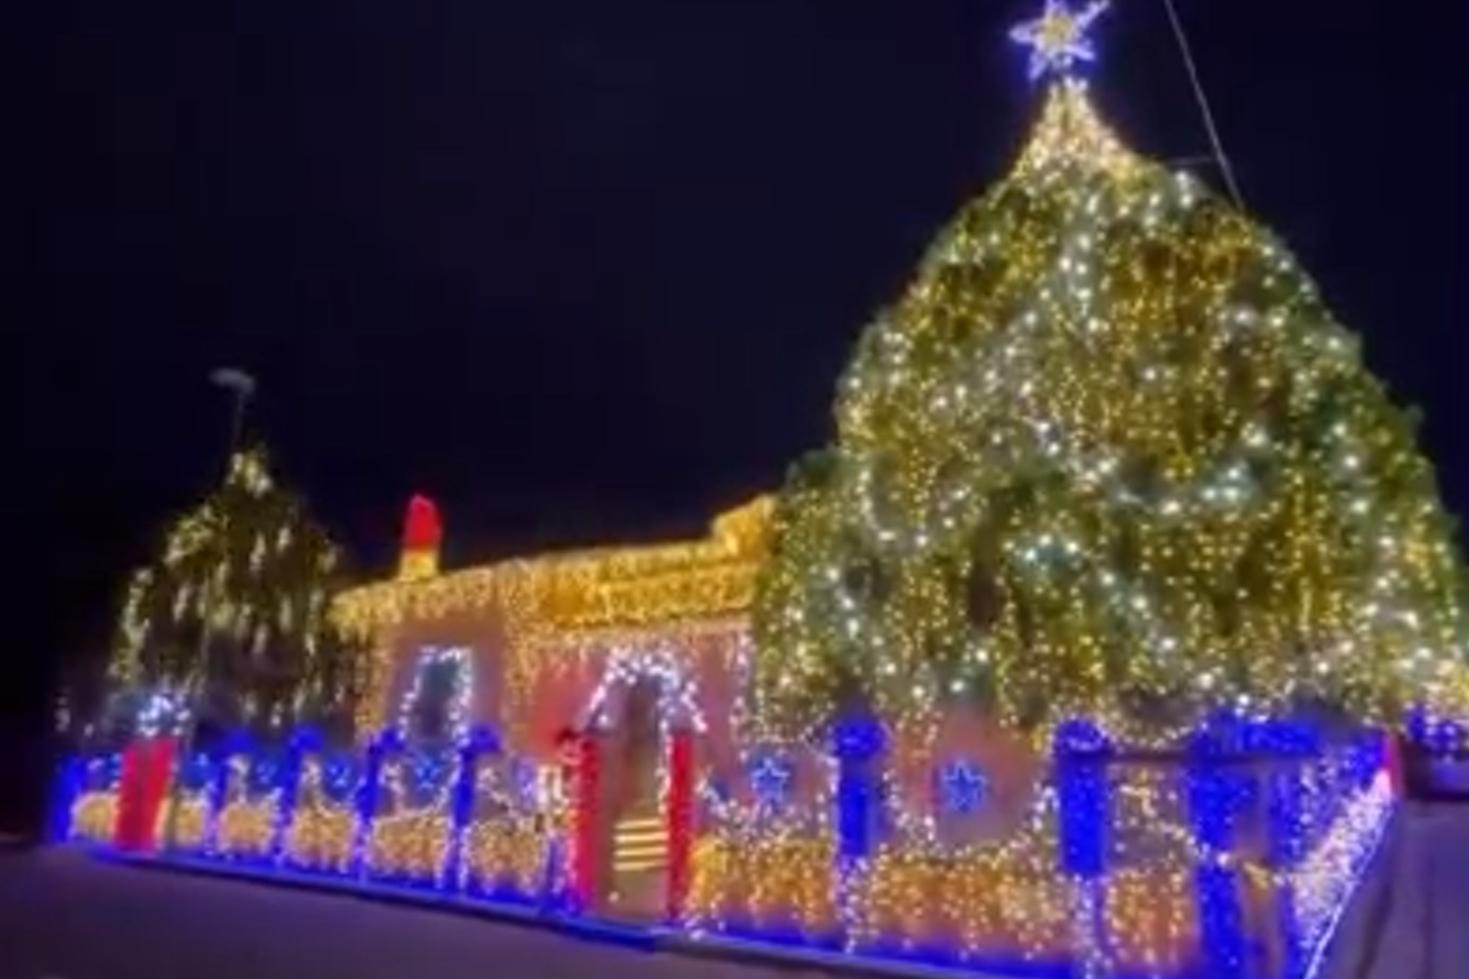 La casa di Senorbì illuminata per Natale (Frame da video)